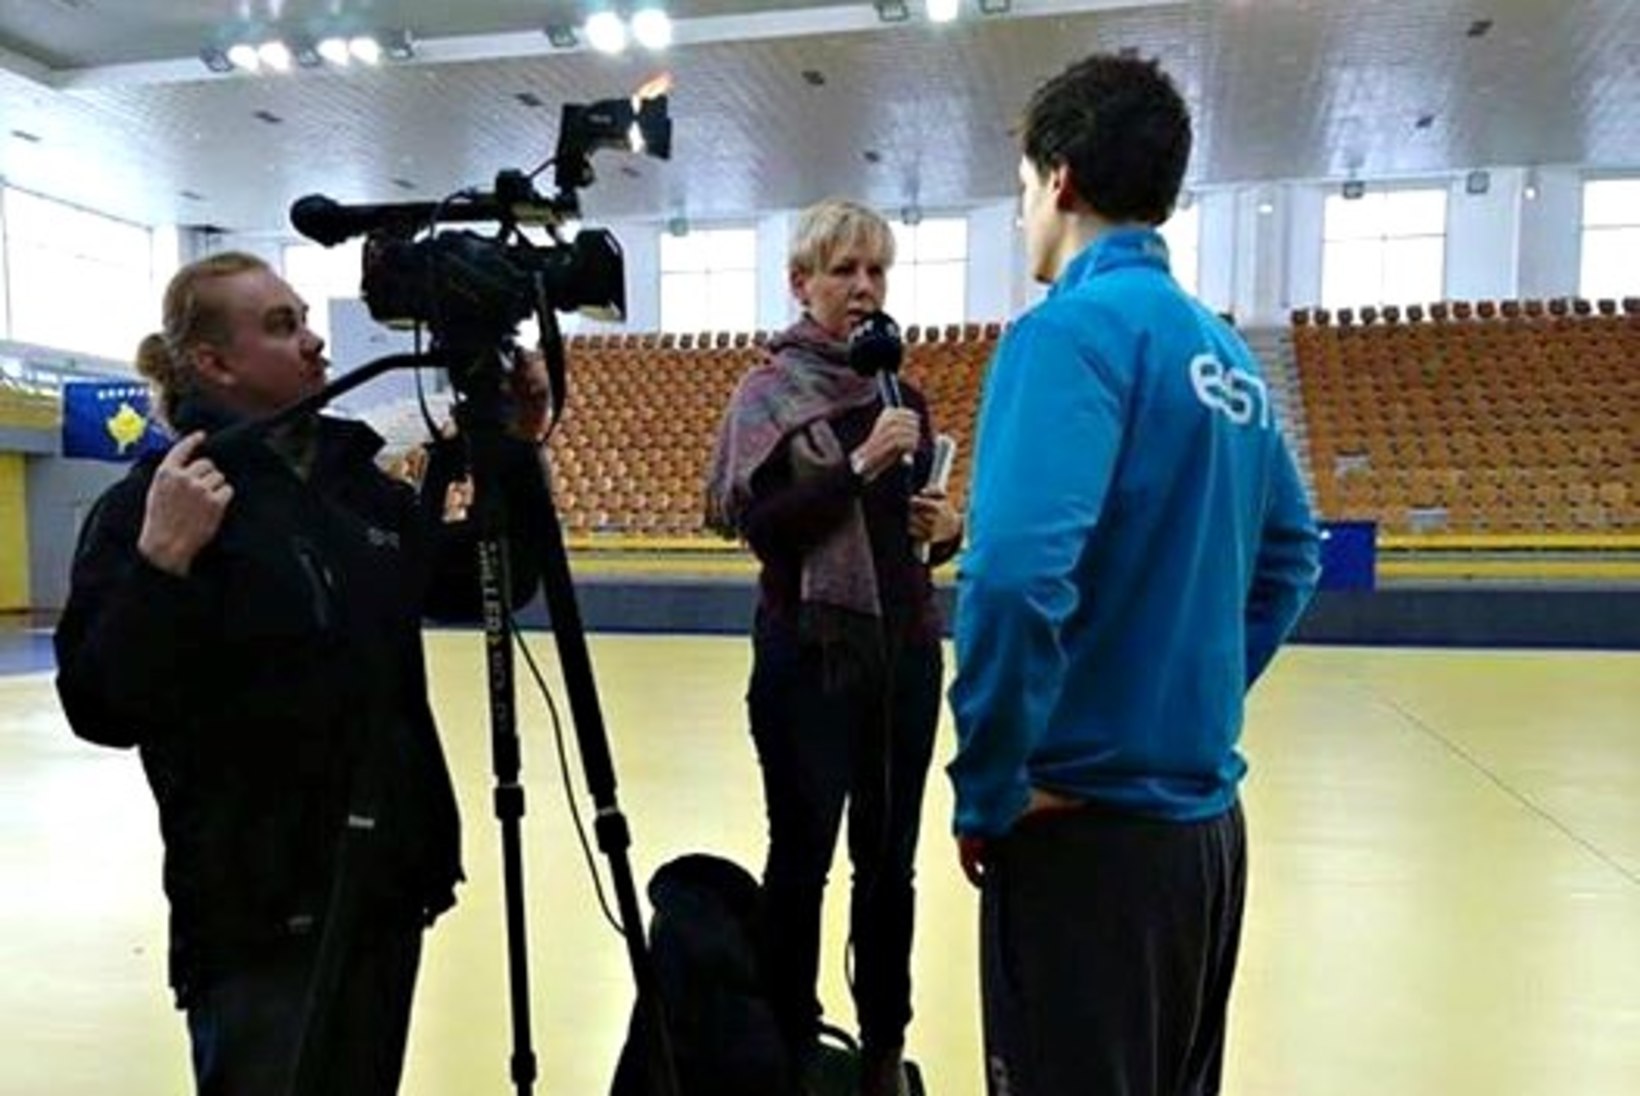 VAHVA KLÕPS | ETV spordireporter Aet Süvari käsipallurit intervjueerimas